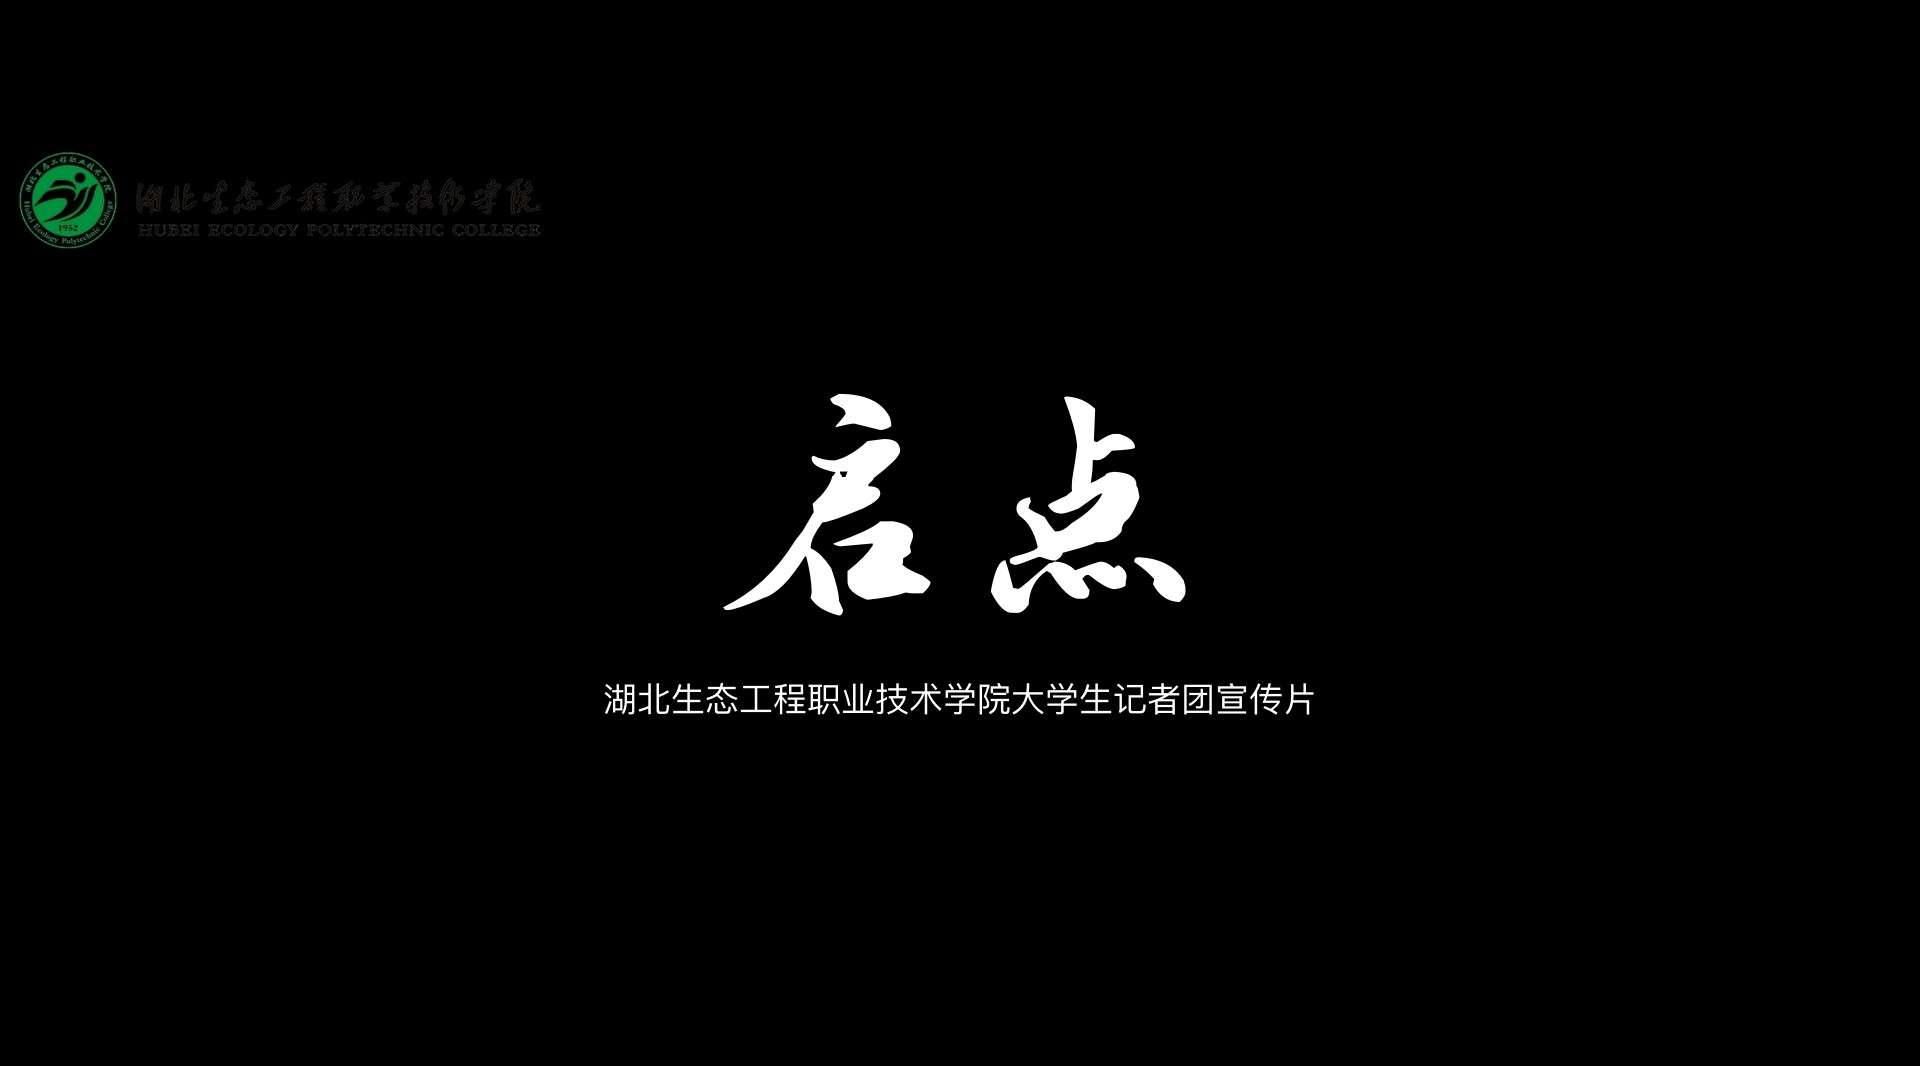 《启点》湖北生态工程职业技术学院大学生记者团宣传片